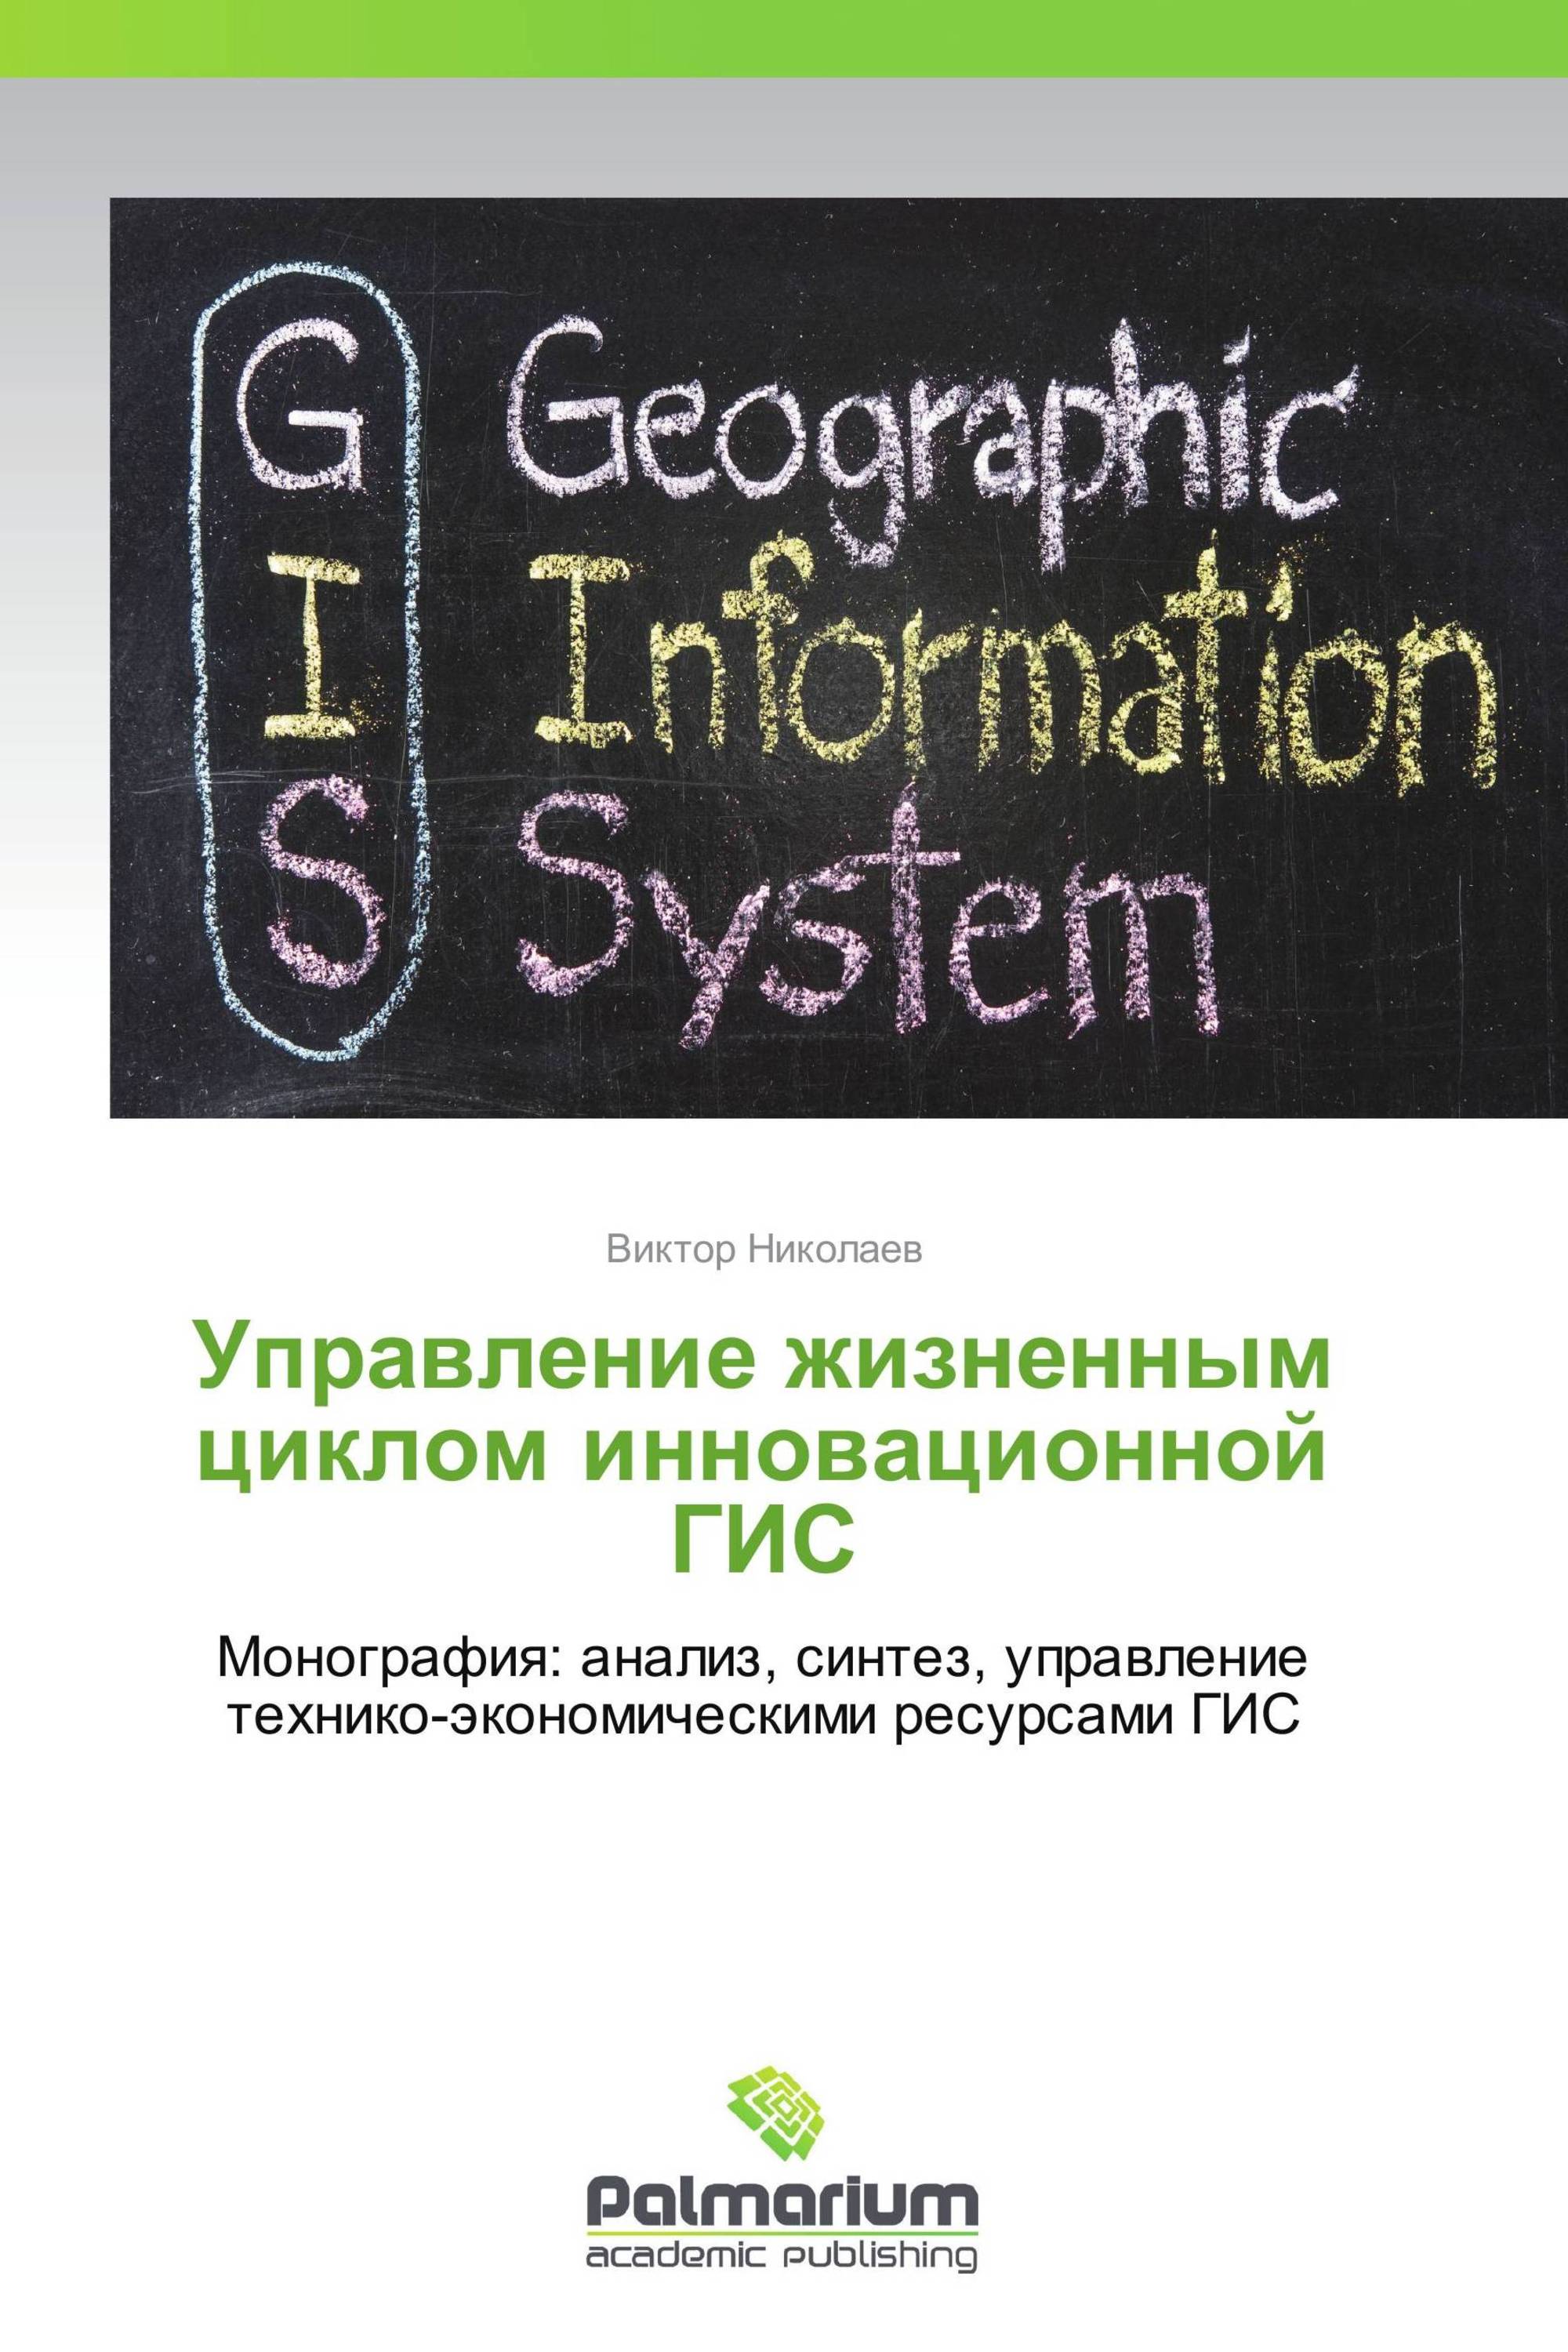 GIS book. Николаевское управление